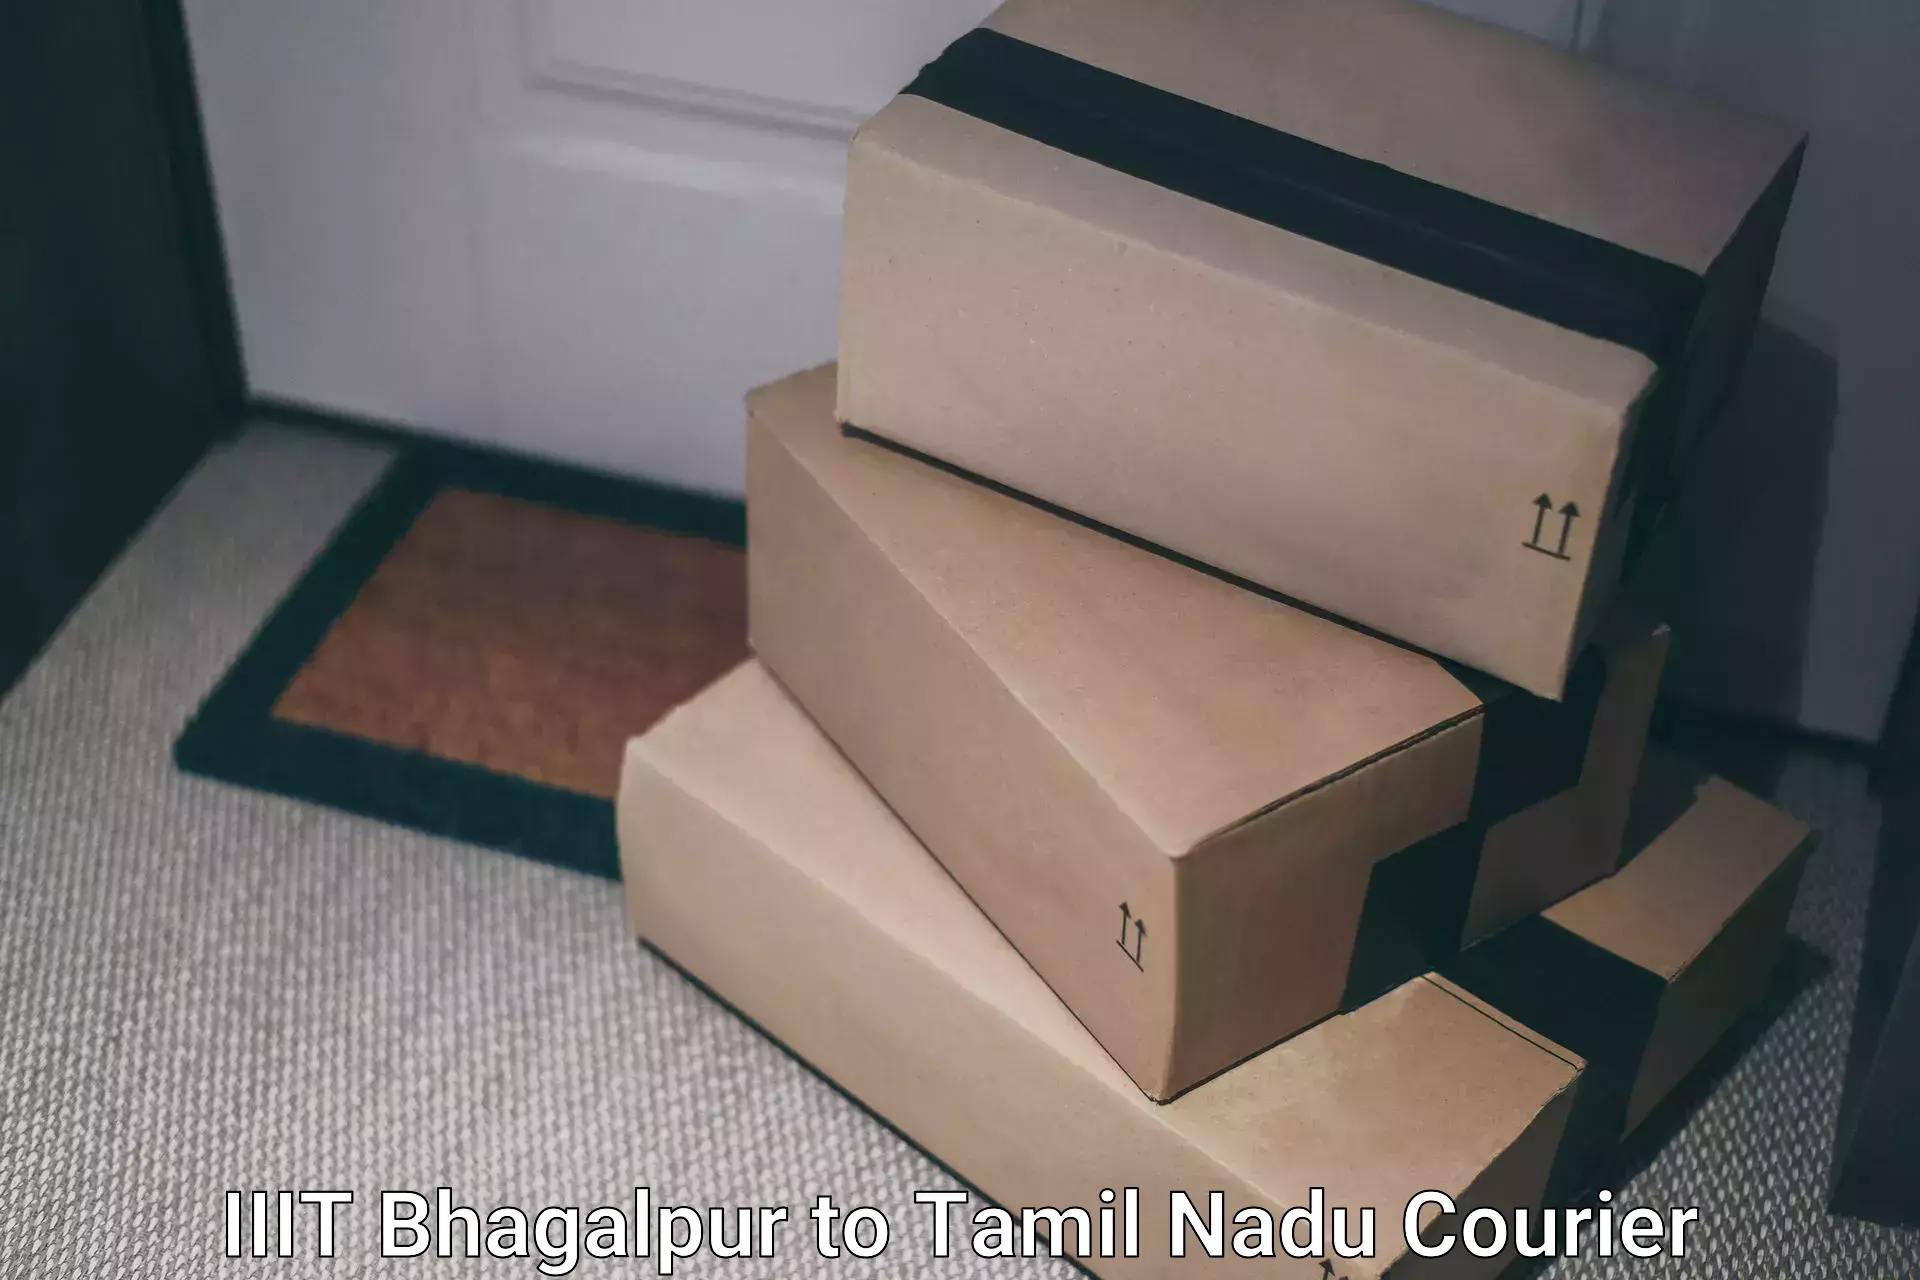 Courier service efficiency IIIT Bhagalpur to Tamil Nadu